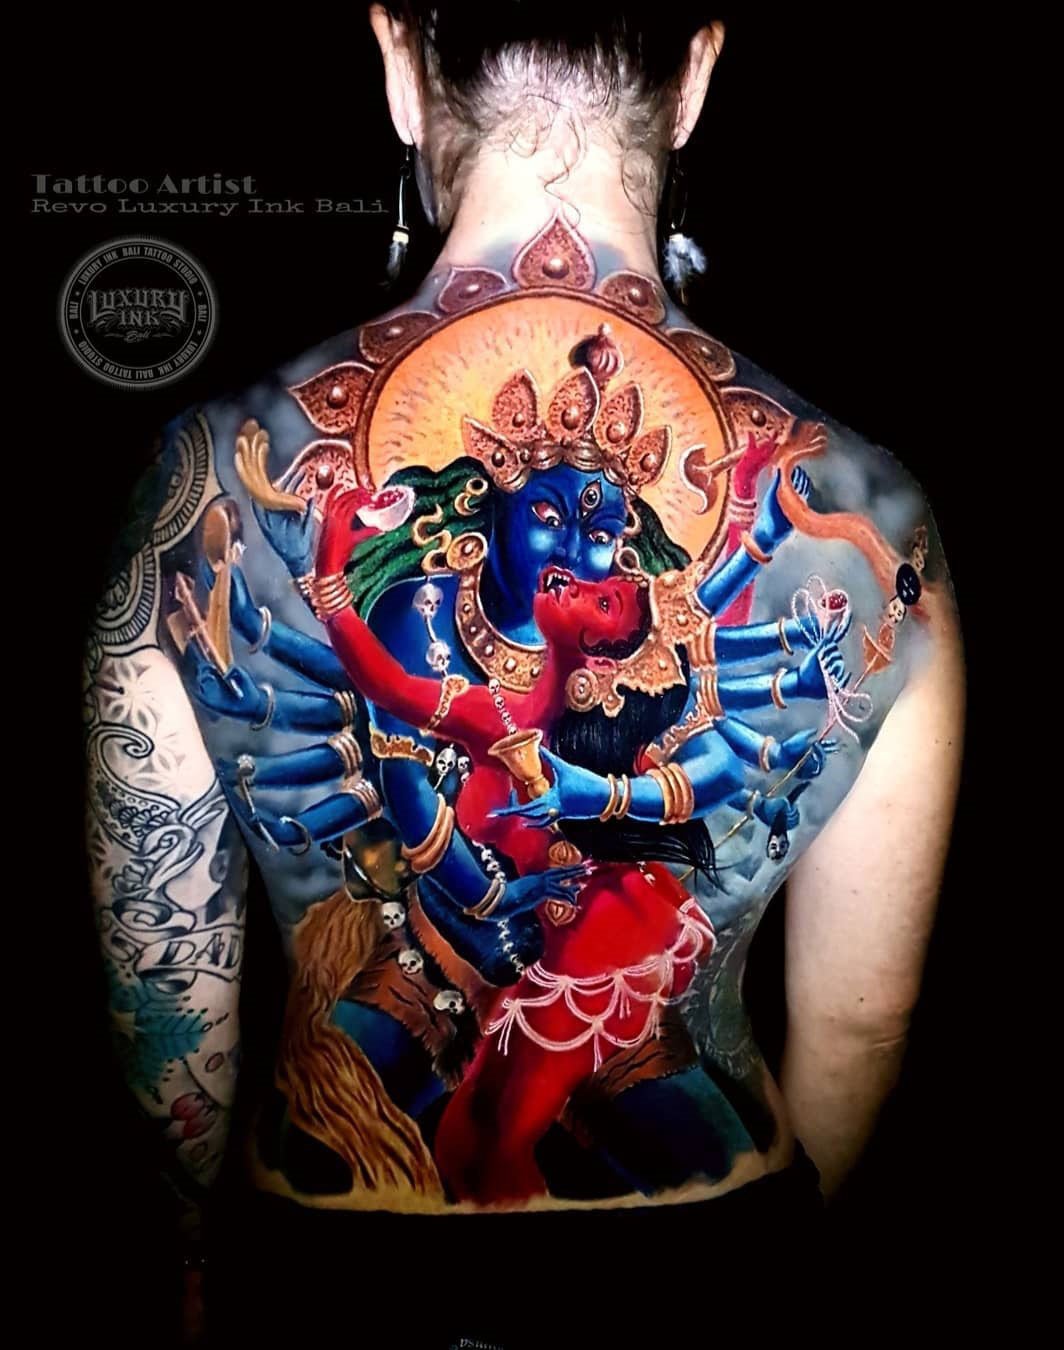 Vishnu Tattoo Vishnu Temporary Tattoo / Hindu Tattoo / God Tattoo / Deity  Tattoo / Govinda Tattoo / Hinduism Tattoo / Om Tattoo / Karma - Etsy